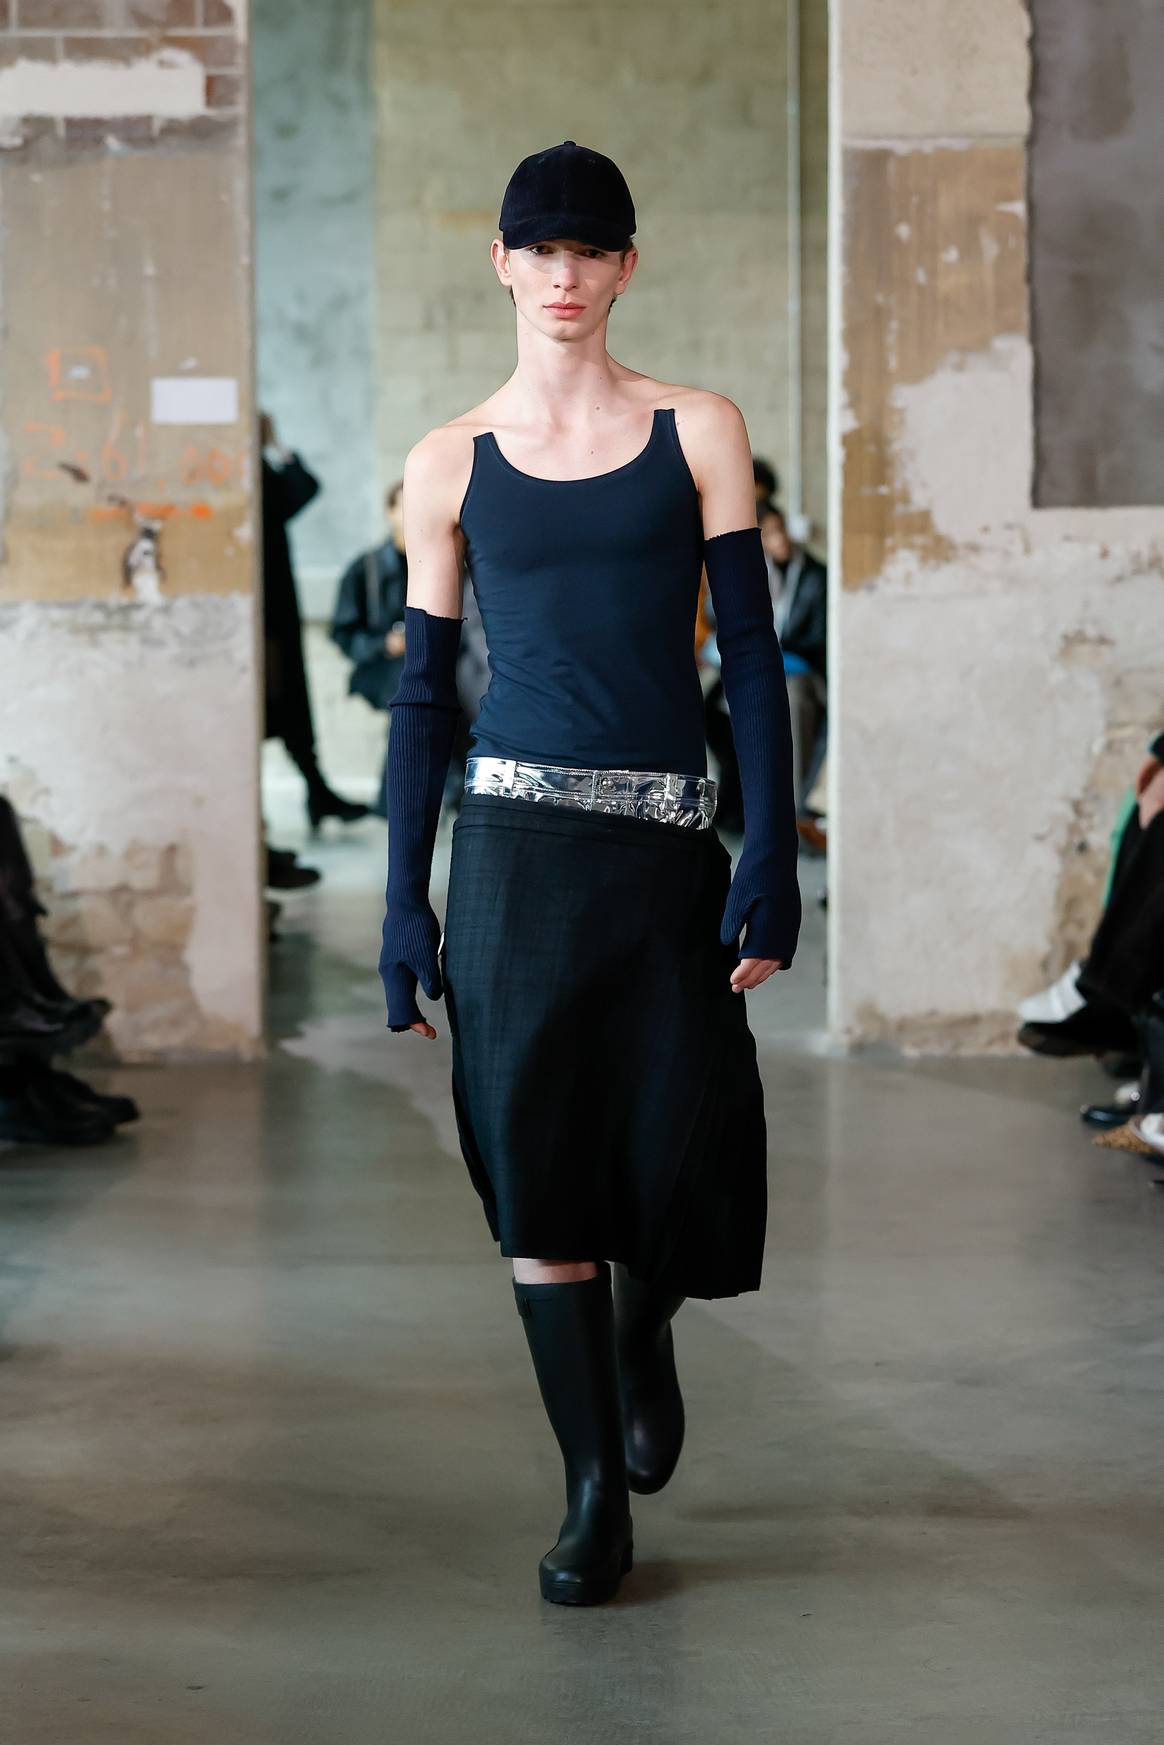 Duran Lantink presentó durante la Semana de la Moda de París, marzo de 2023, diseños de camisas recicladas de la cadena de tiendas holandesa Hema.